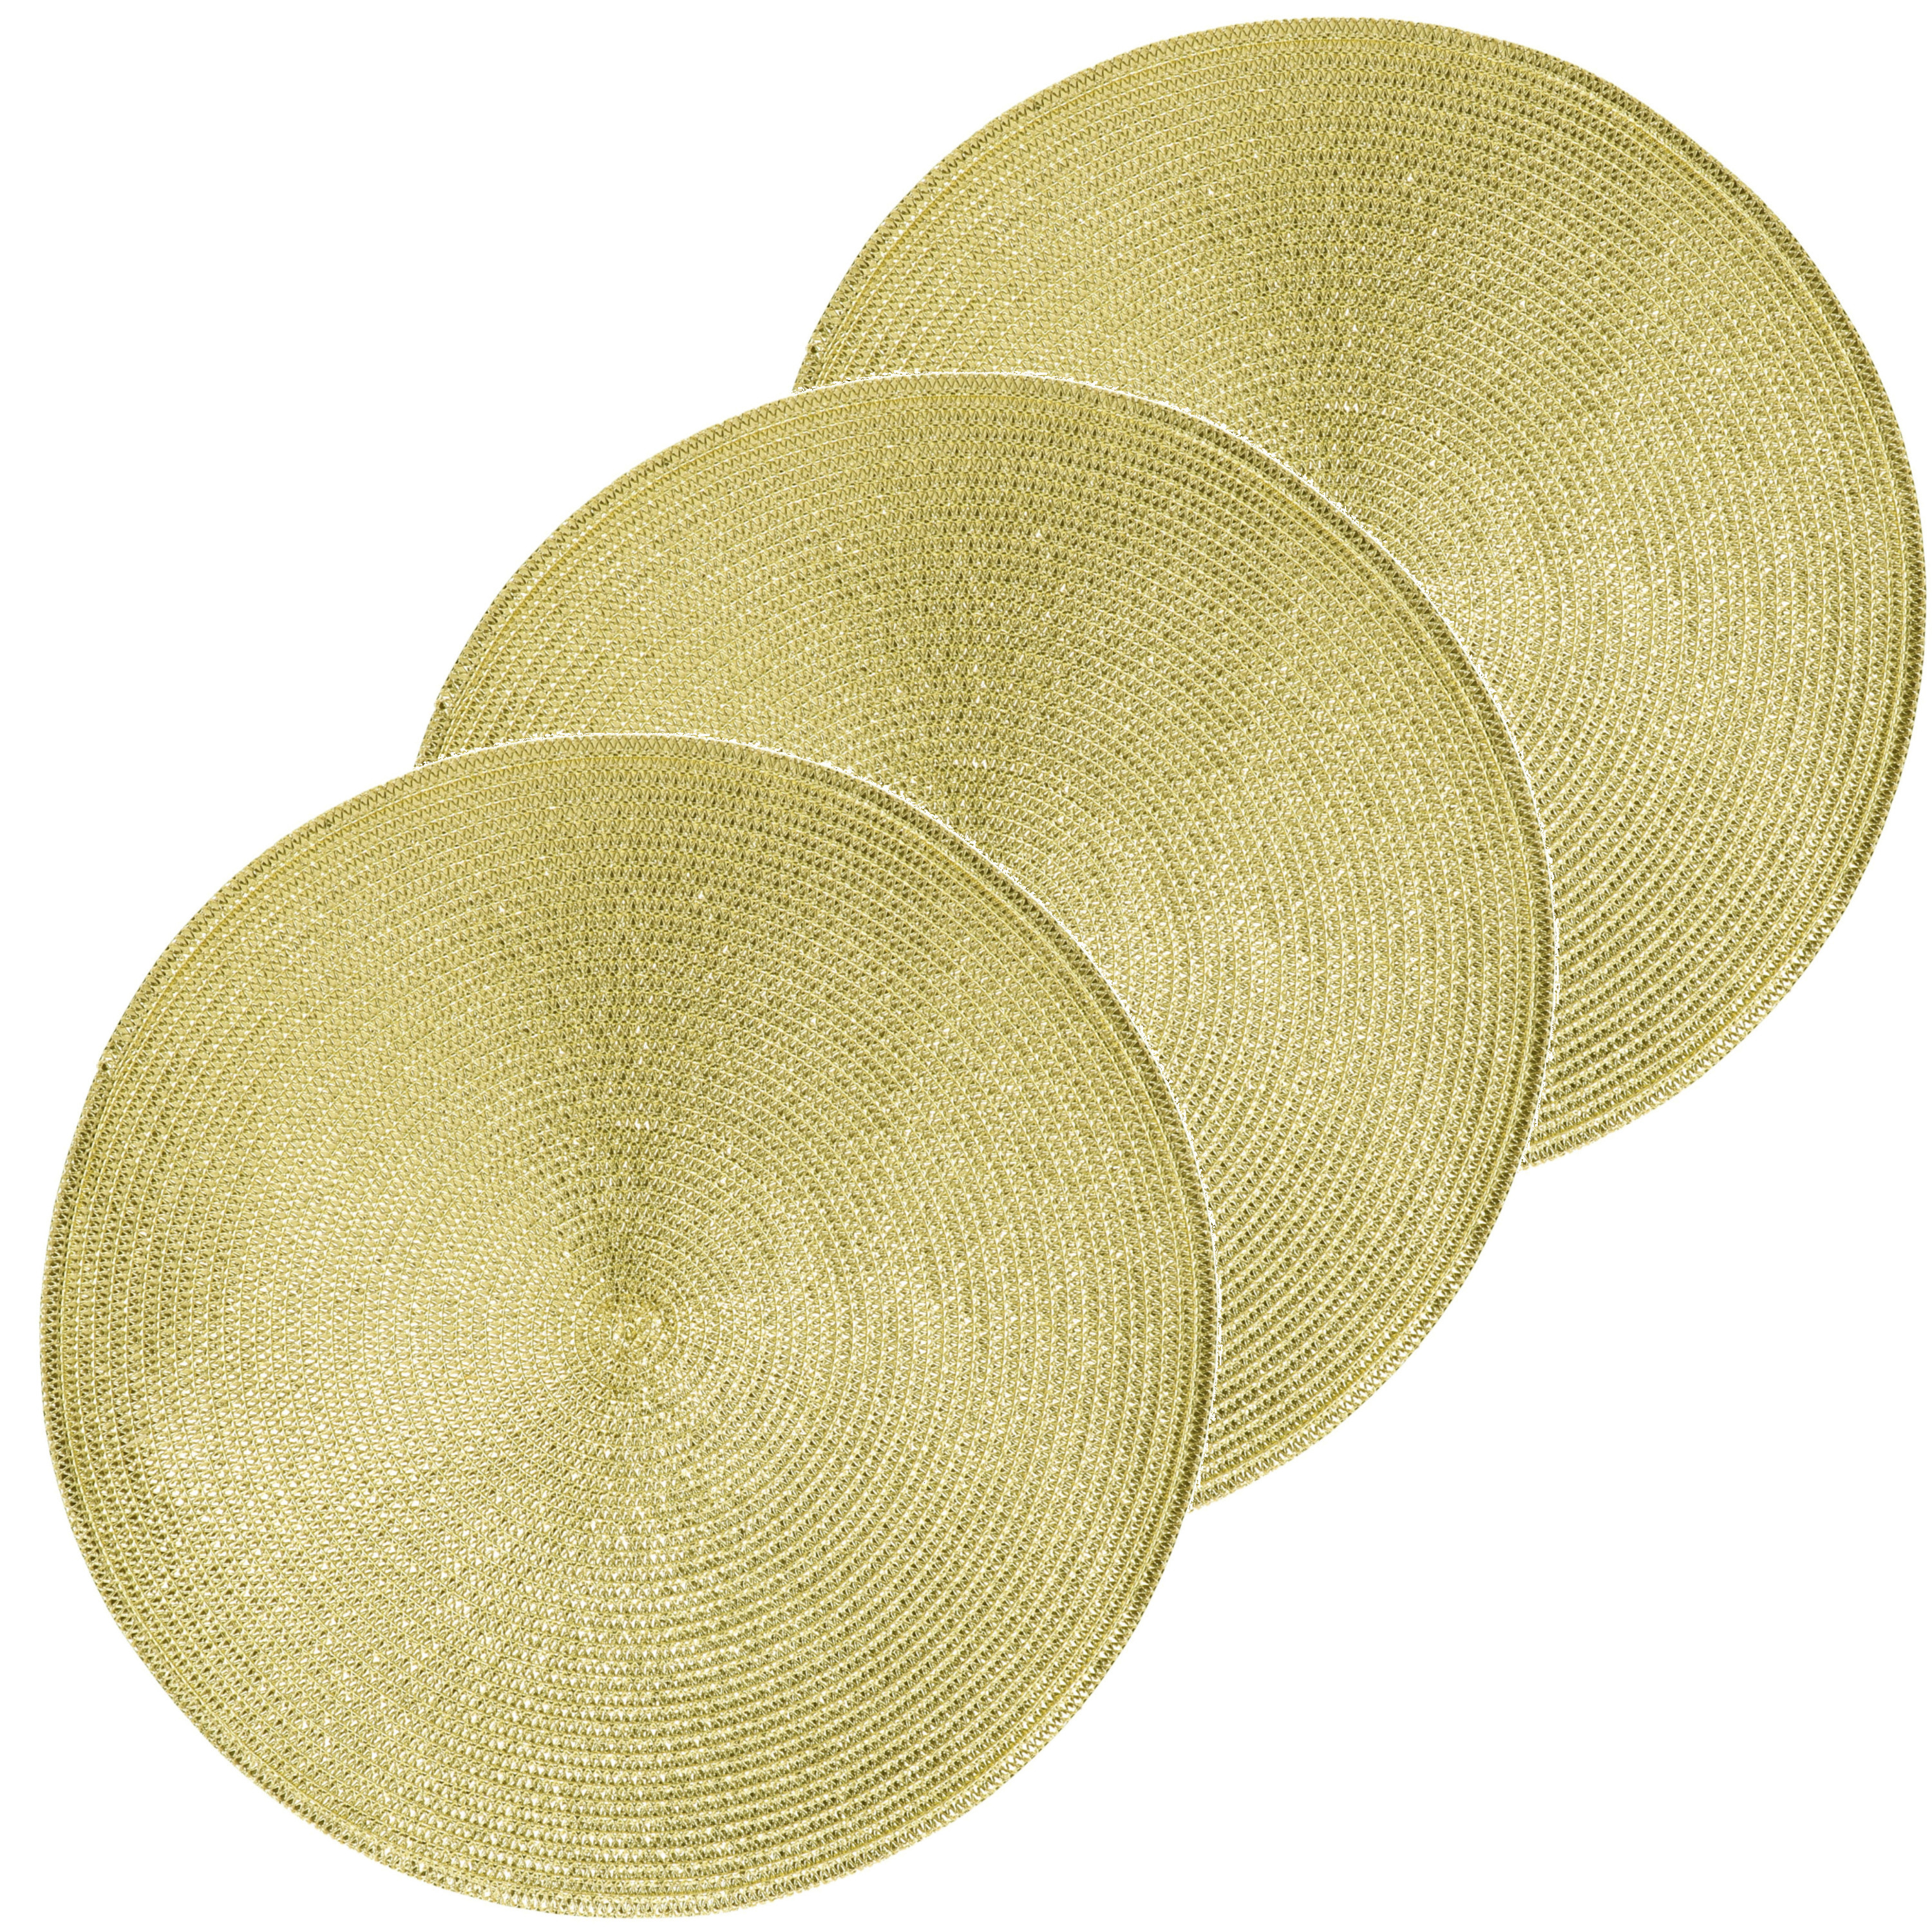 4x Ronde placemats glimmend goud 38 cm geweven/gevlochten